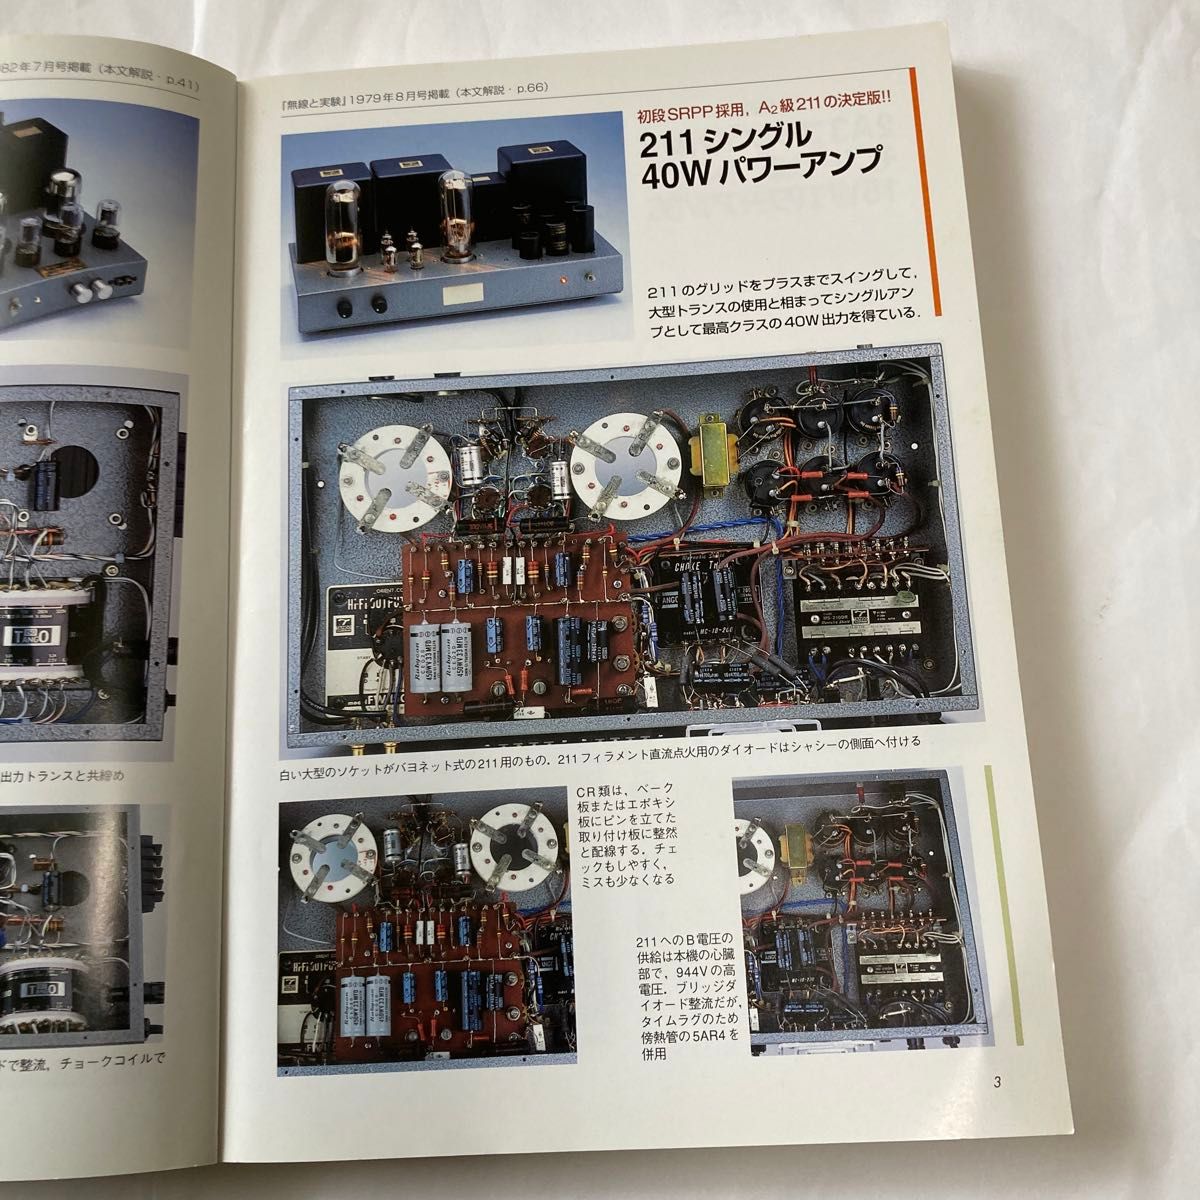 オーディオ真空管アンプ製作テクニック　森川忠勇氏著　2004年8月発行　真空管アンプ好きには良い書籍です。誠文堂新光社刊